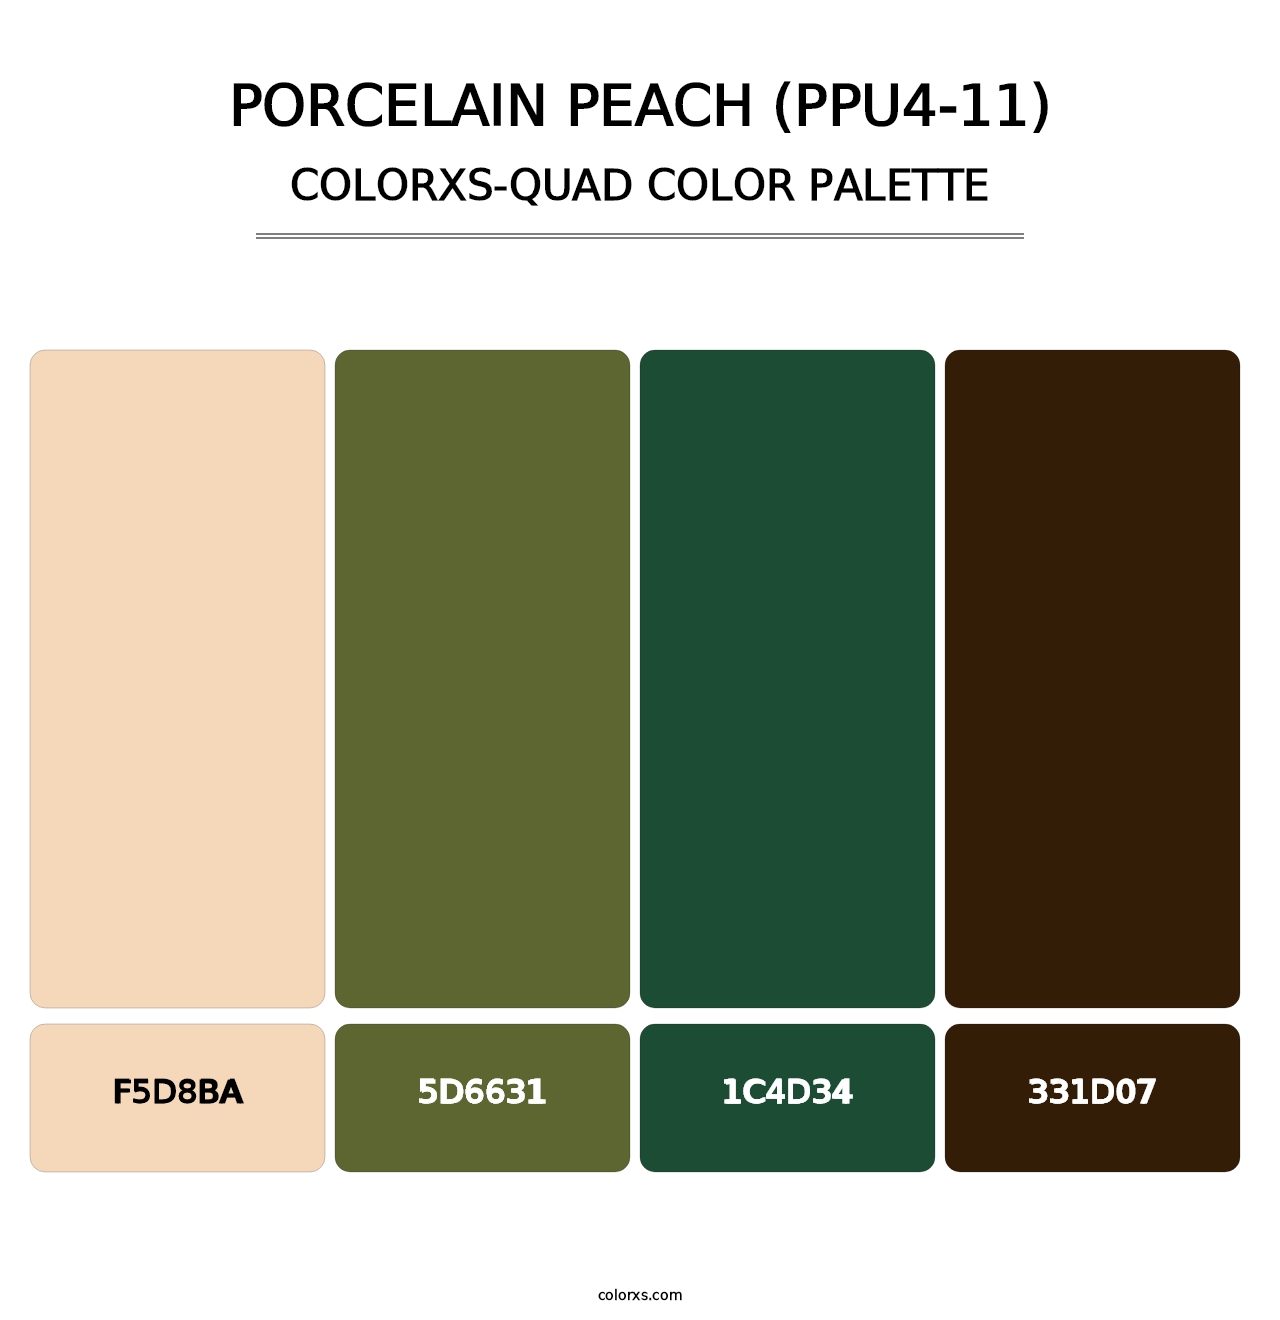 Porcelain Peach (PPU4-11) - Colorxs Quad Palette